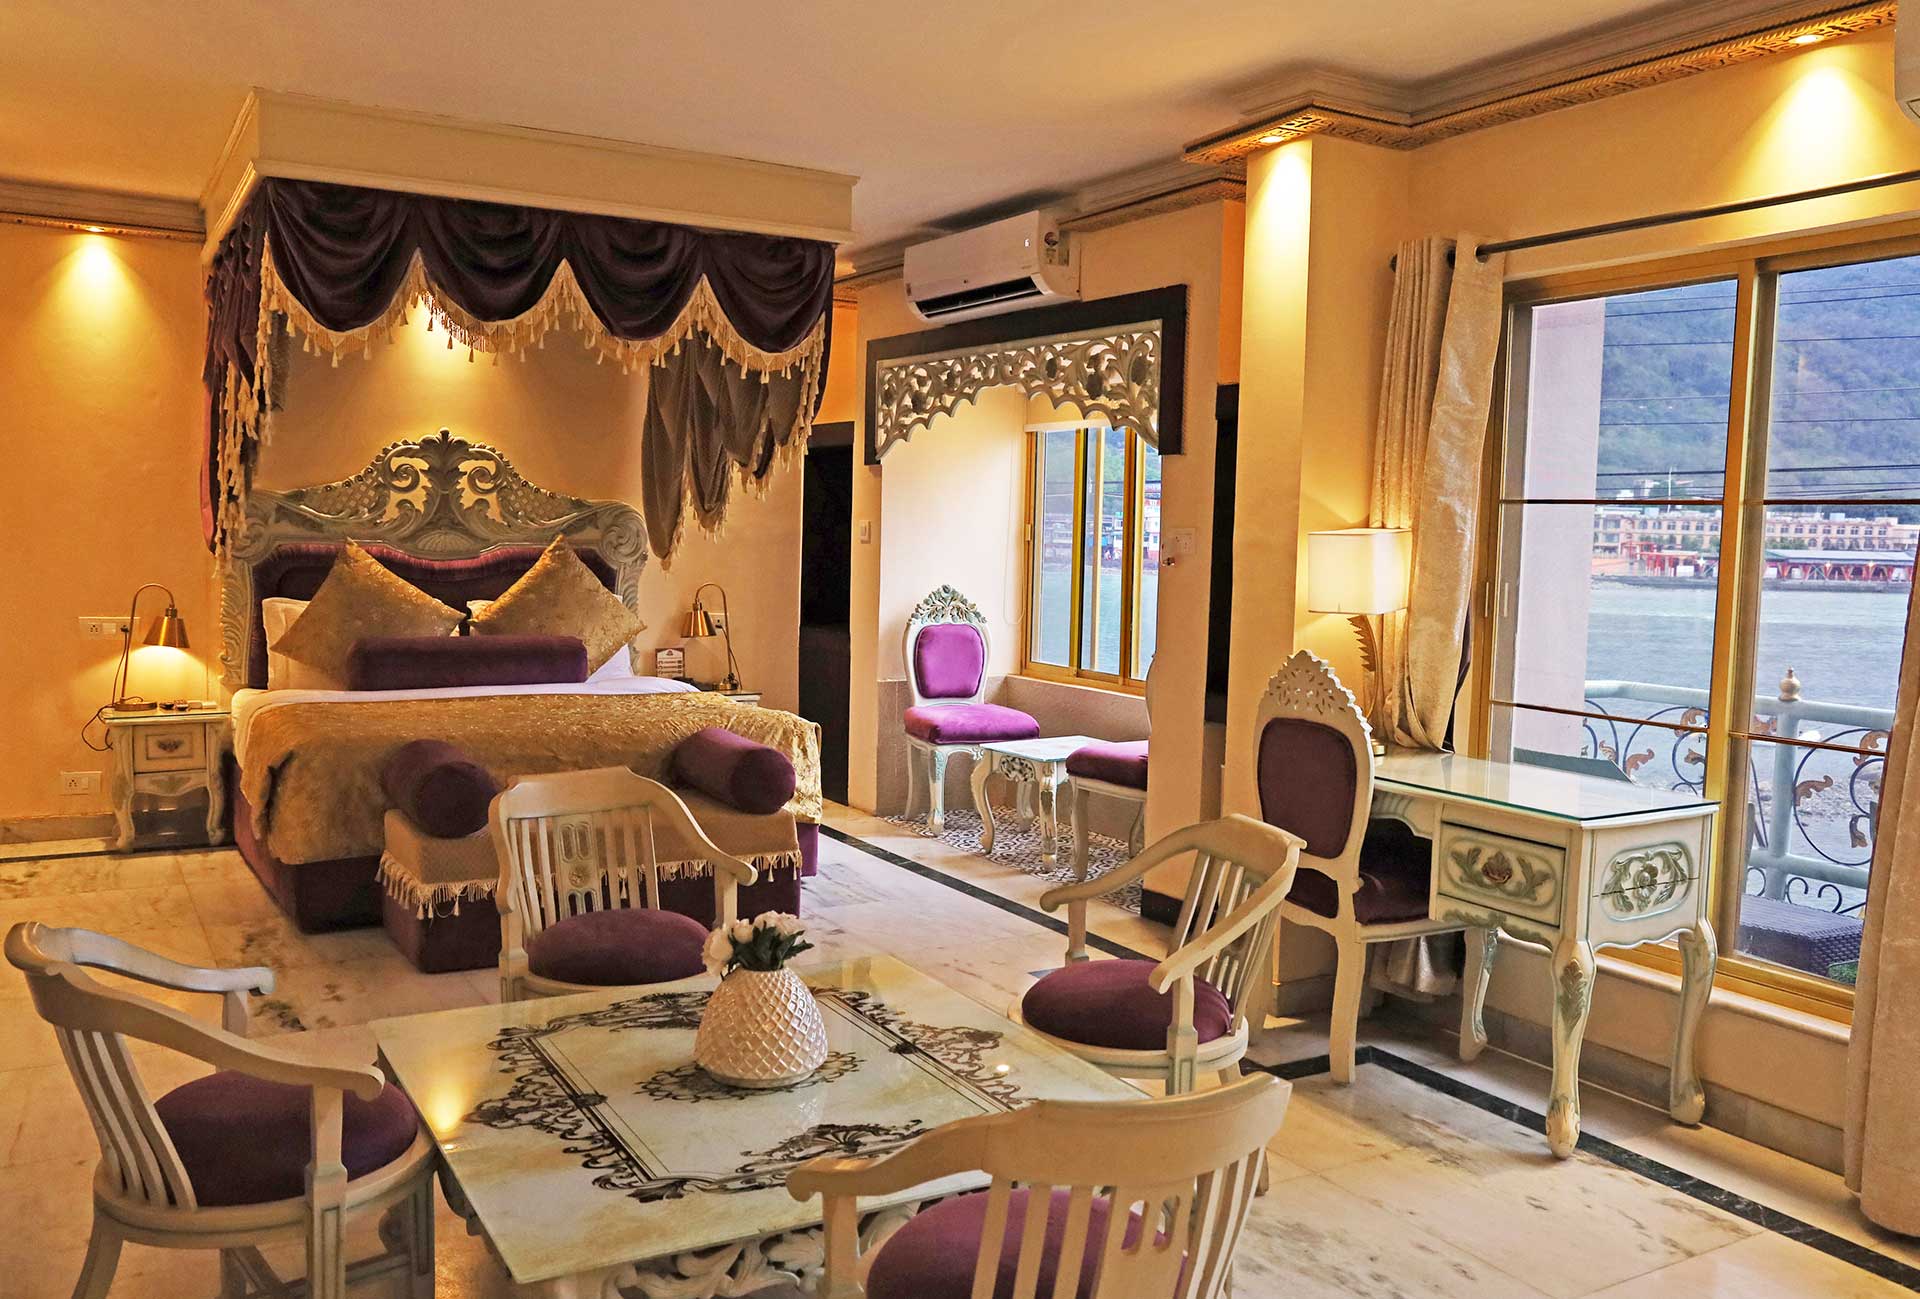 Maharaja Suite Room - The Neeraj Ganga Heritage Palace